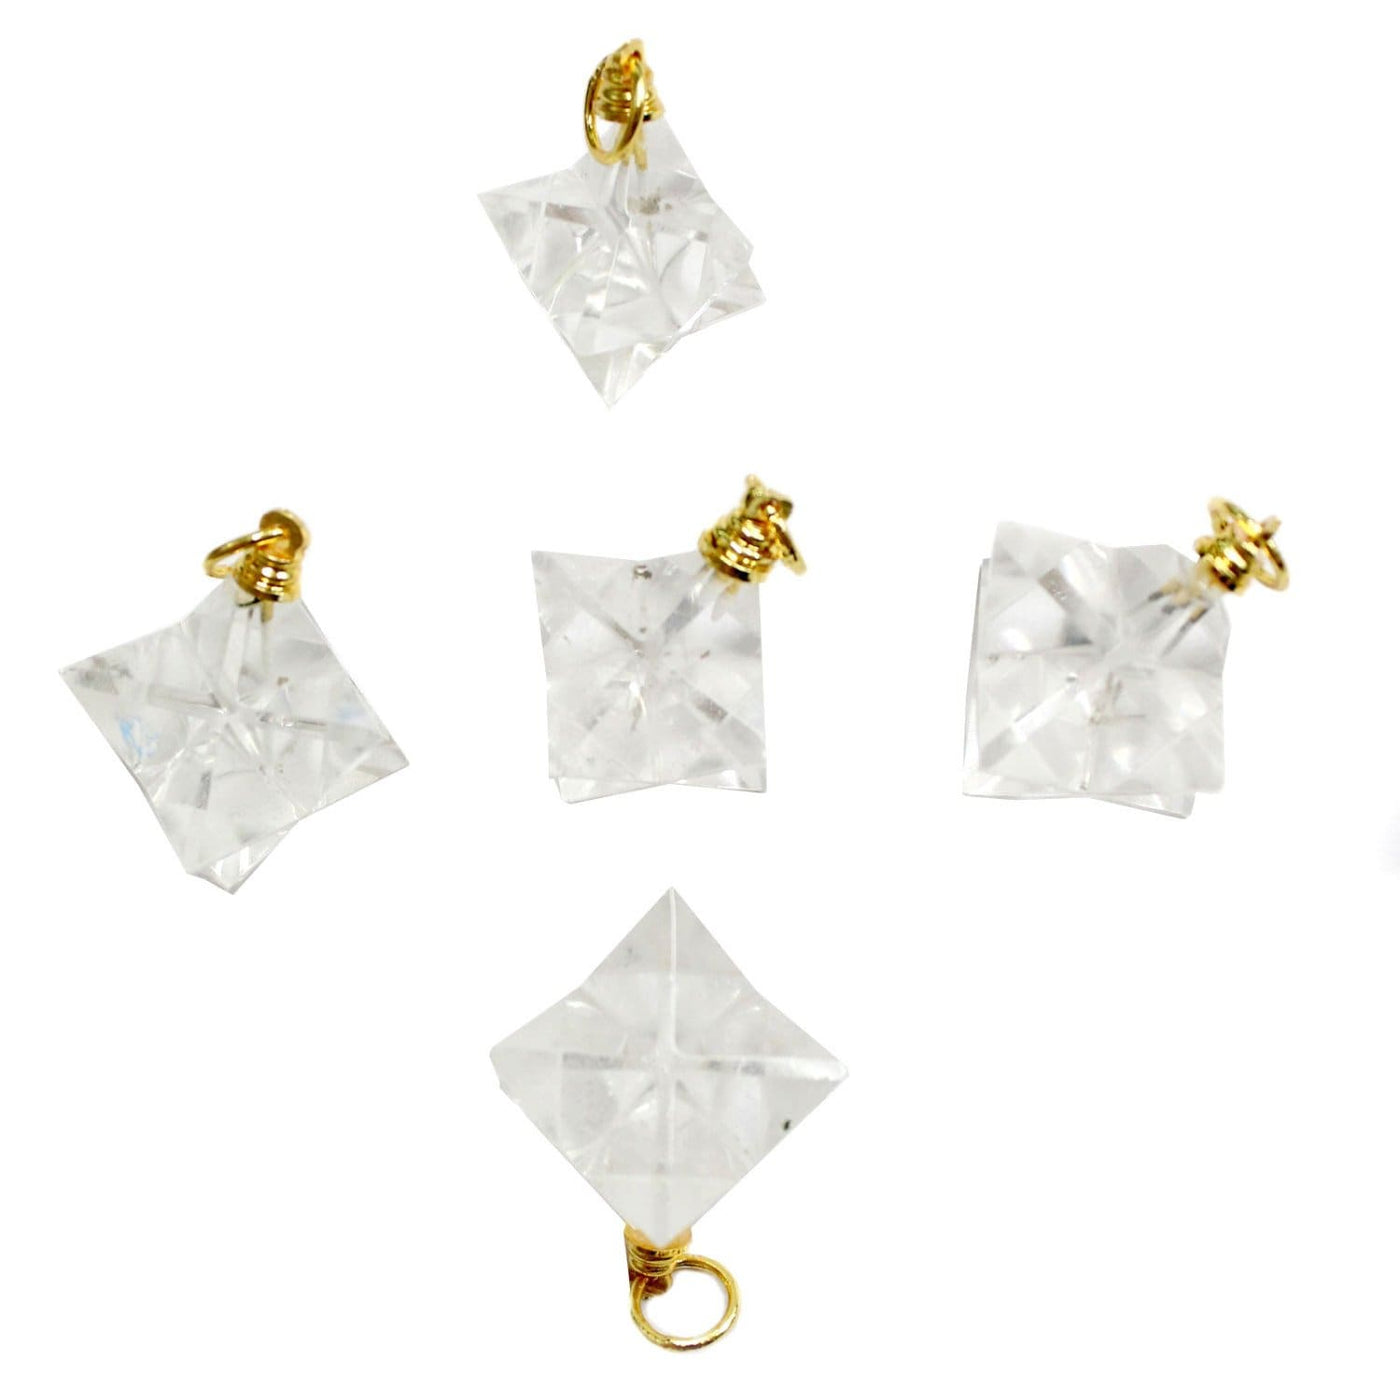 crystal quartz merkaba star pendants on white background